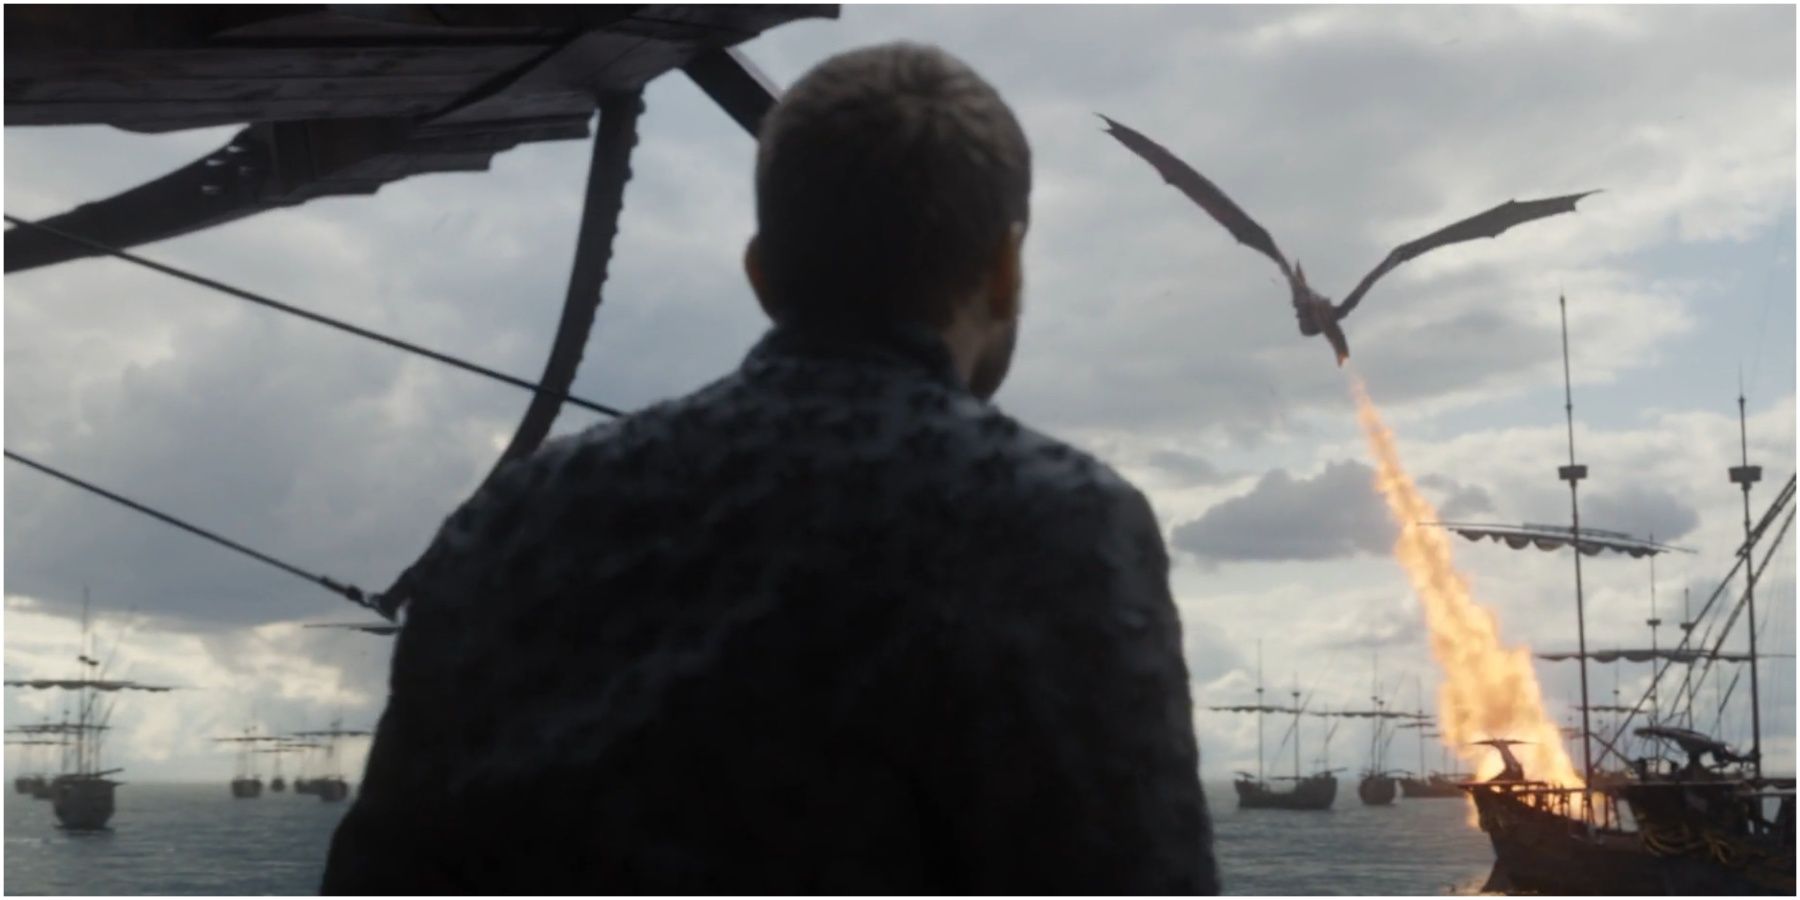 Euron Greyjoy watches Drogon destroy the Iron Fleet in Game of Thrones.